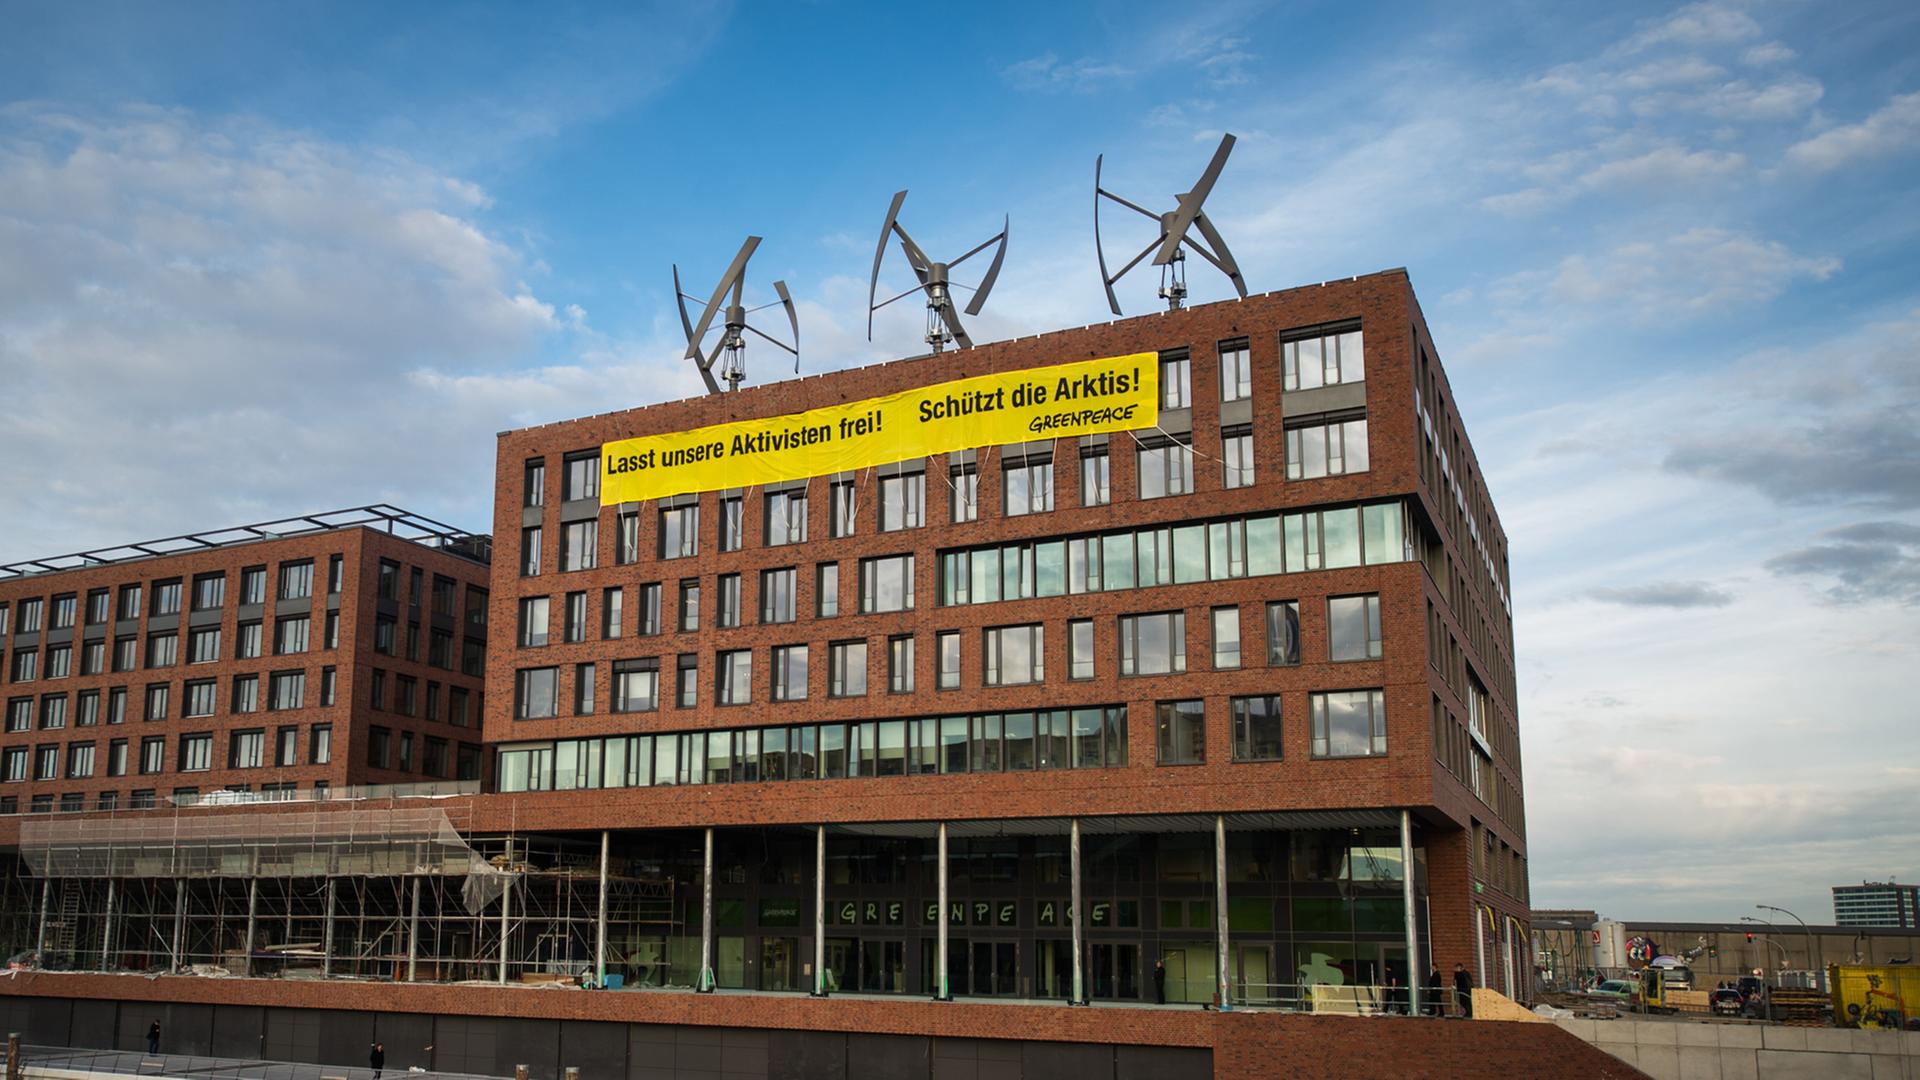 Das neue Gebäude der Umweltschutzorganisation Greenpeace, aufgenommen am 31.10.2013 in der Hafencity in Hamburg. Die neue Greenpeace-Zentrale wird nach eigenen Angaben komplett mit erneuerbaren Energien versorgt.